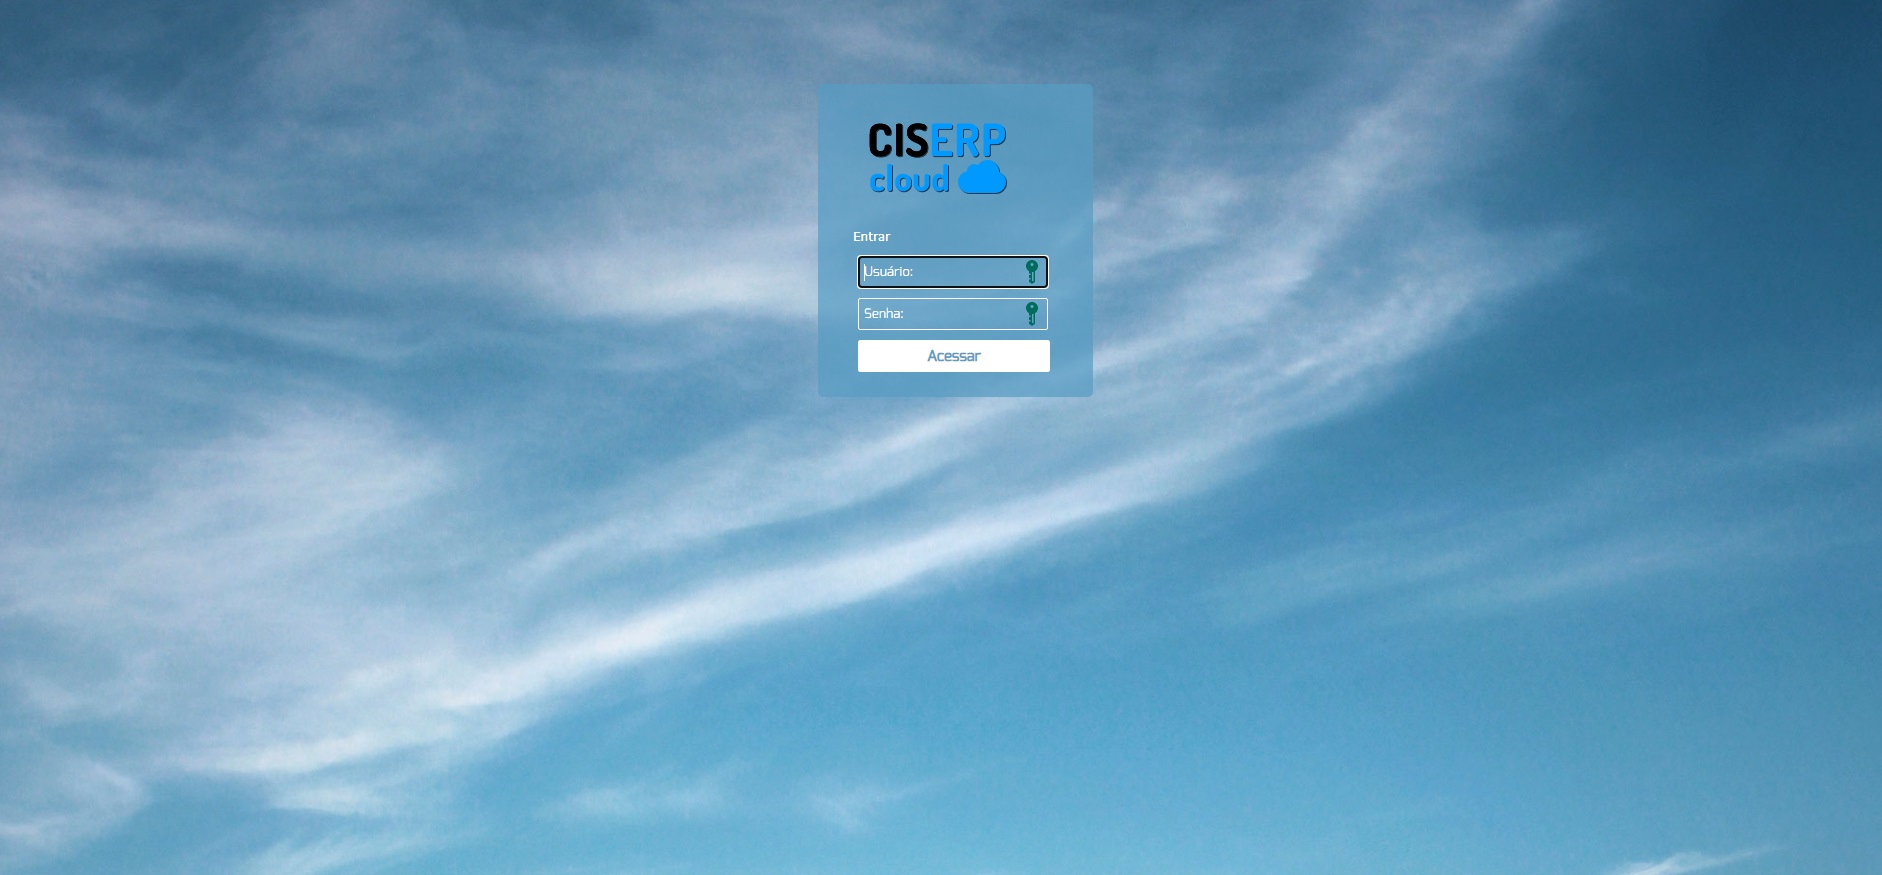 CIS-ERP Acesso a nuvem